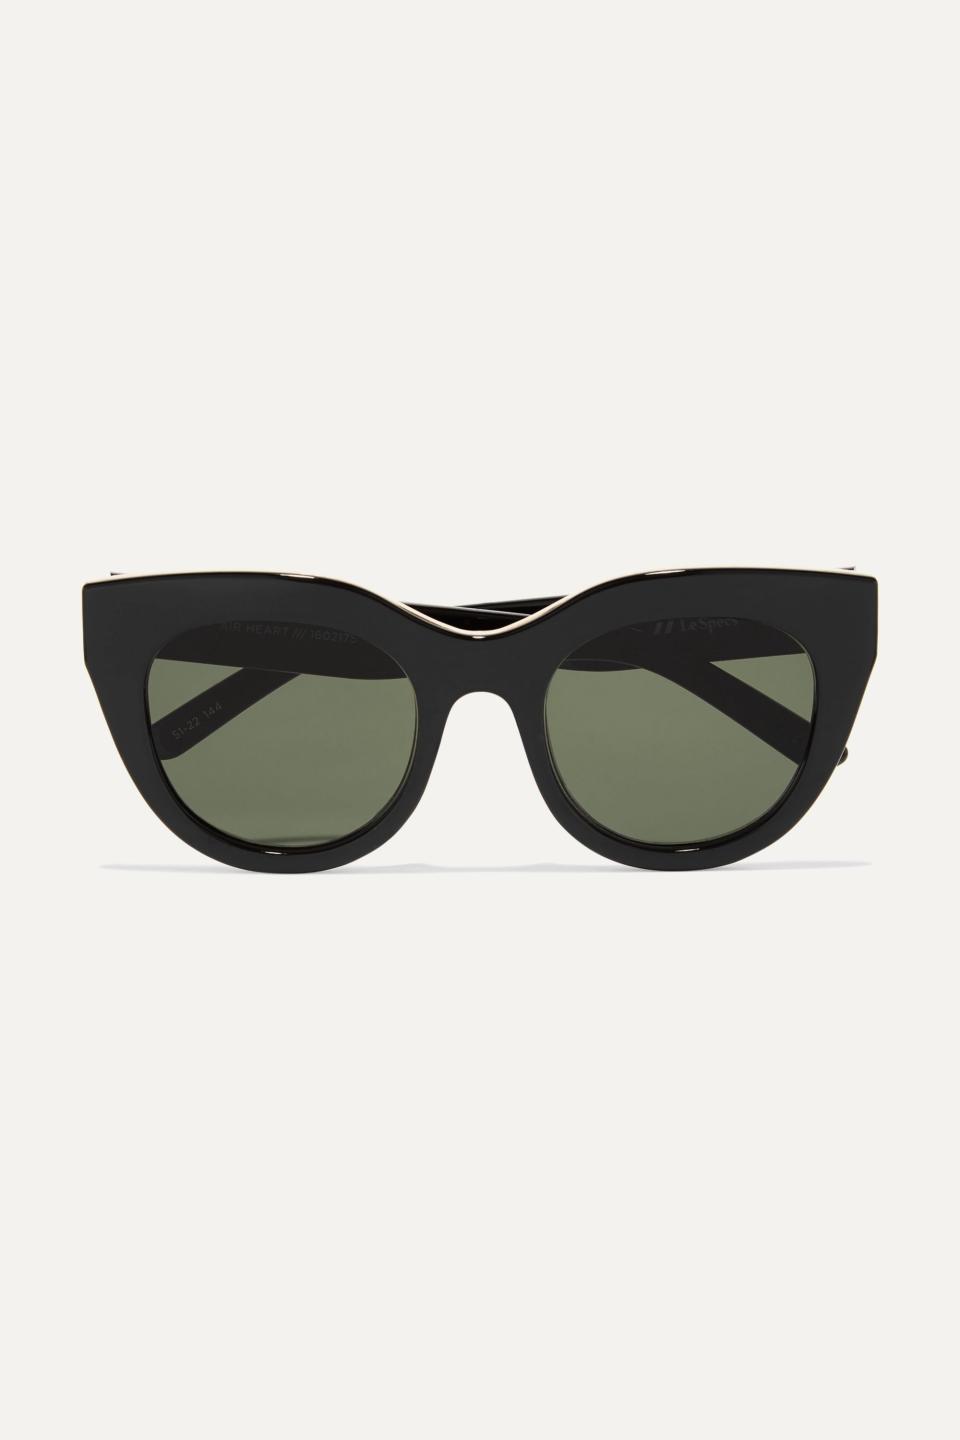 5) Air Heart Cat-Eye Sunglasses